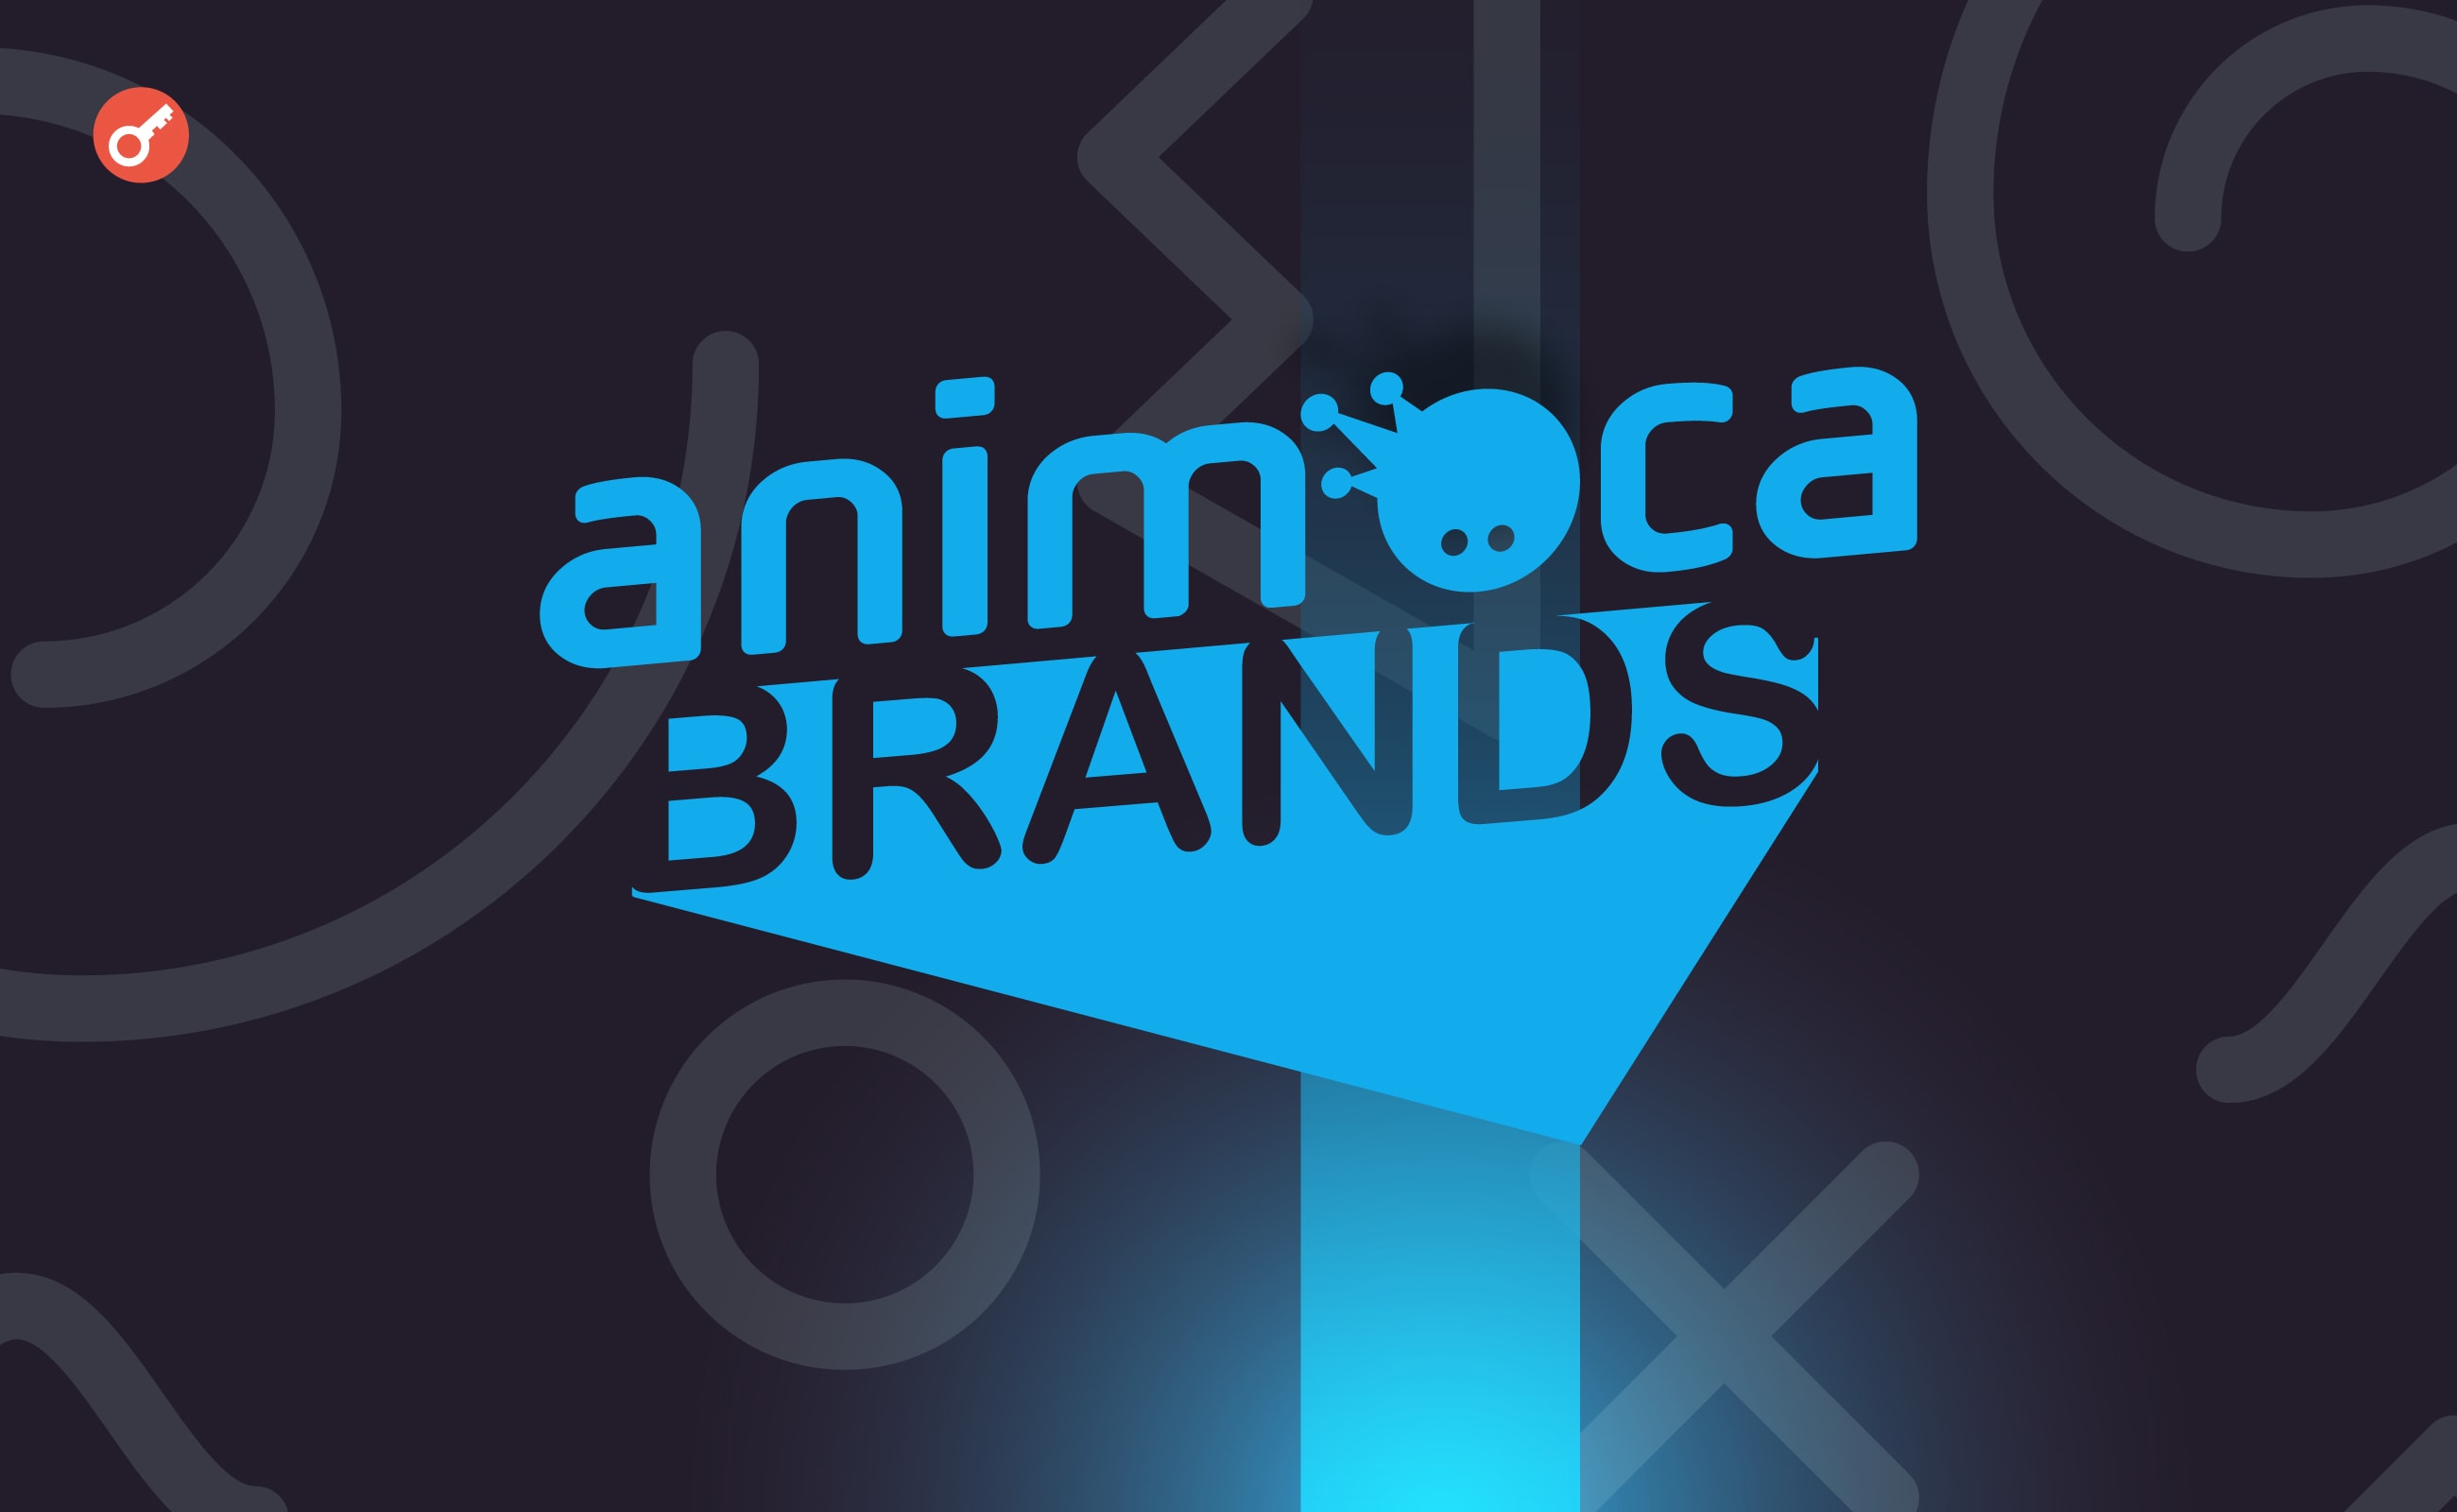 Anichess от Animoca Brands объявила о партнерстве с чемпионом по шахматам Магнусом Карлсеном. Заглавный коллаж новости.